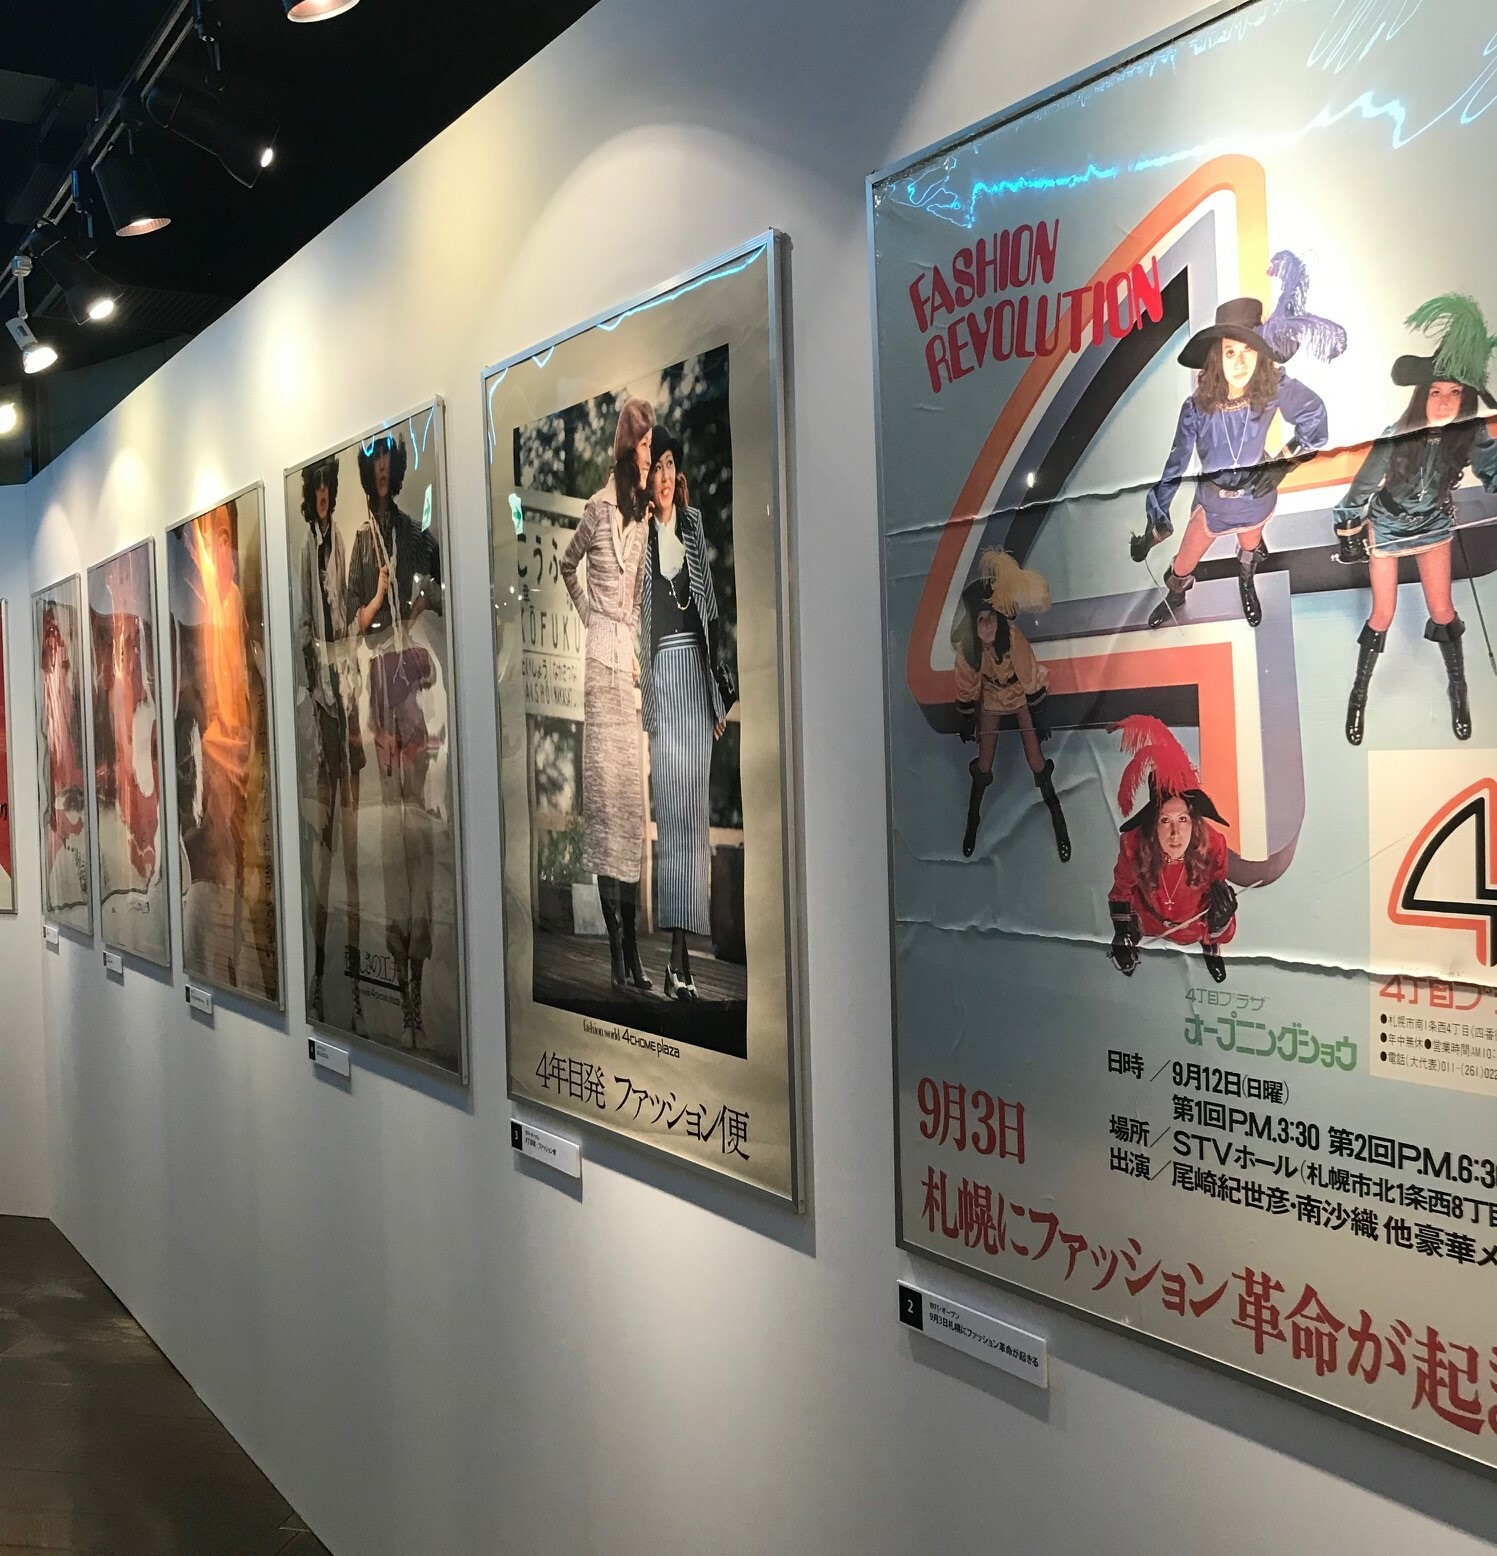 時代を感じられるポスターの数々。第一会場は昭和時代のポスターなどを展示